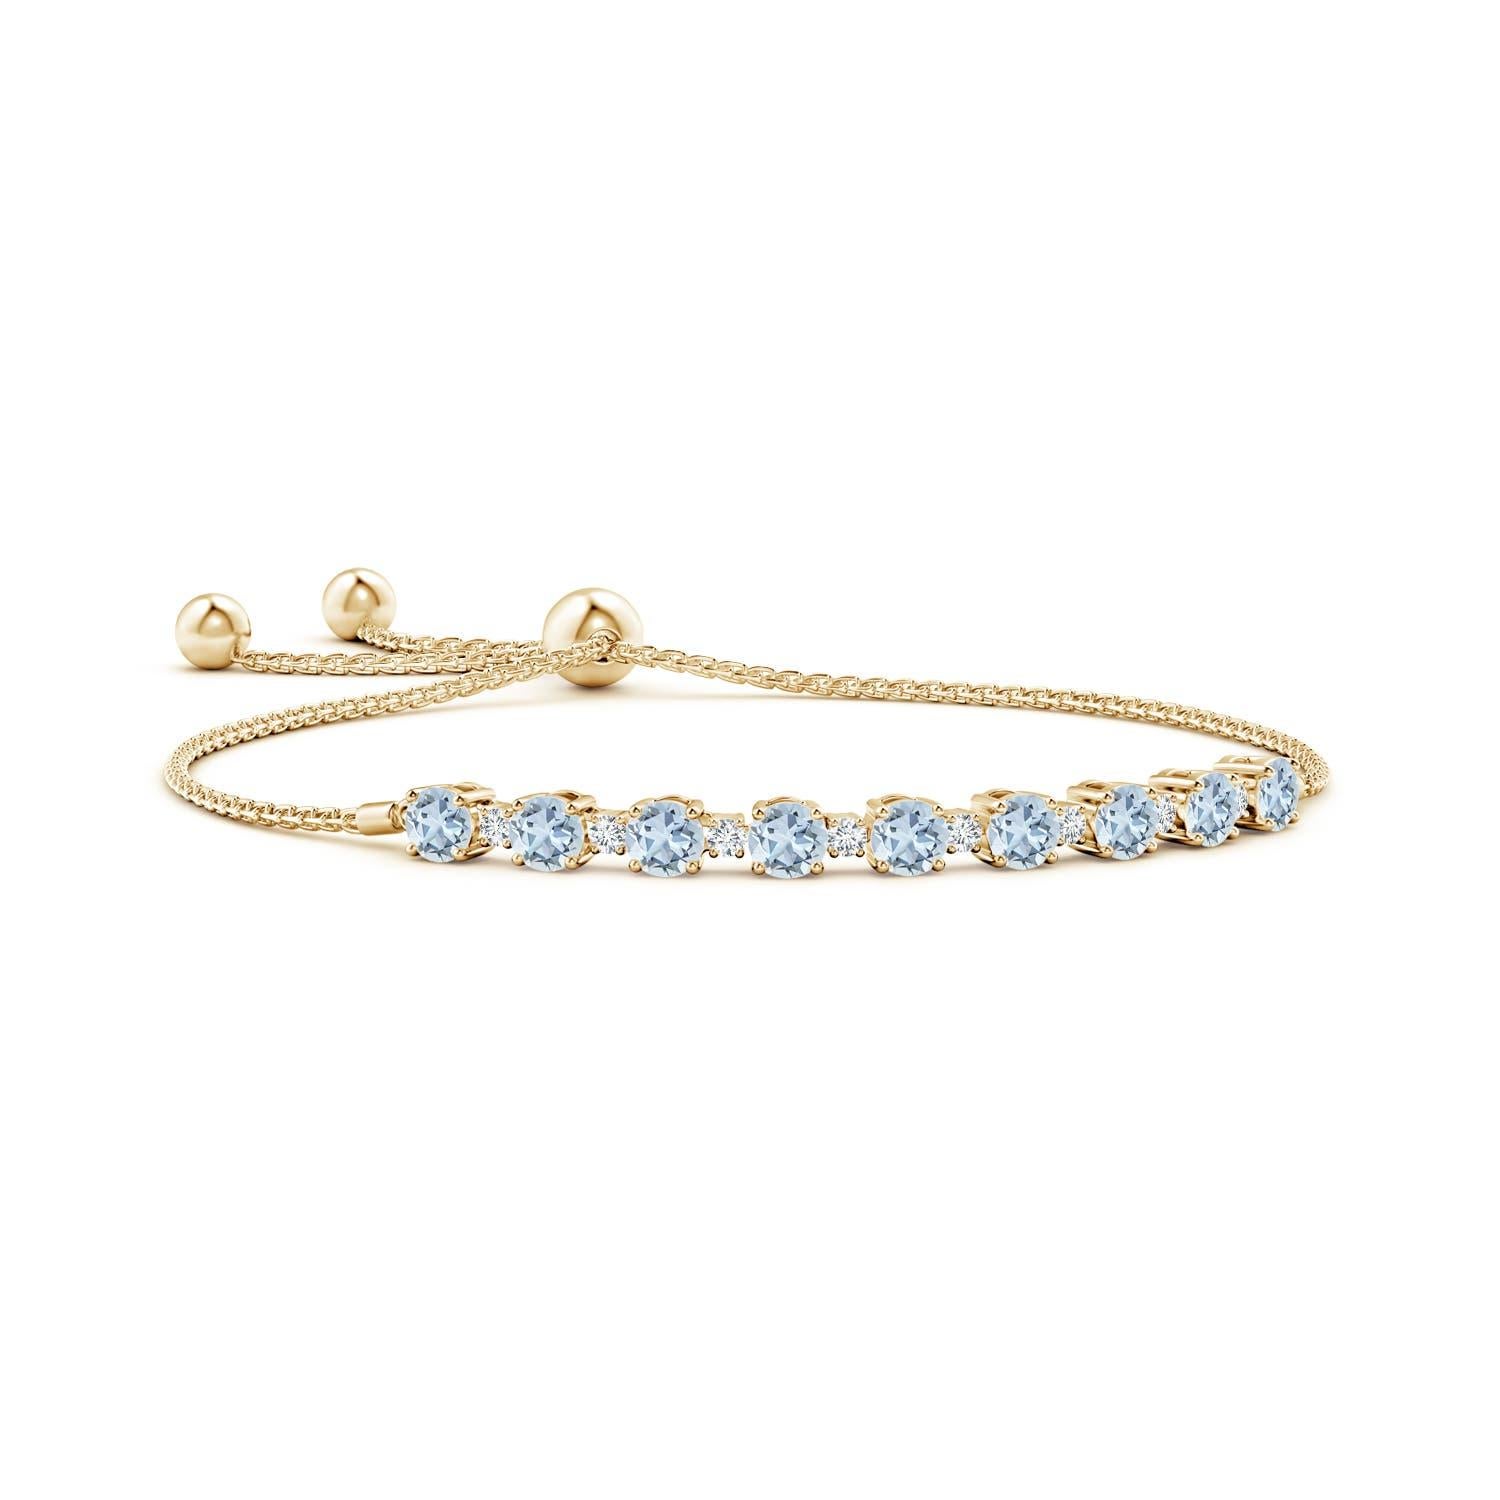 Meeresblaue Aquamarine und glitzernde Diamanten vereinen sich auf diesem Tennis-Bolo-Armband aus 14 Karat Gelbgold. Sie sind abwechselnd mit Zacken besetzt und sorgen für einen klassischen Look. Dieses Armband ist verstellbar und passt den meisten